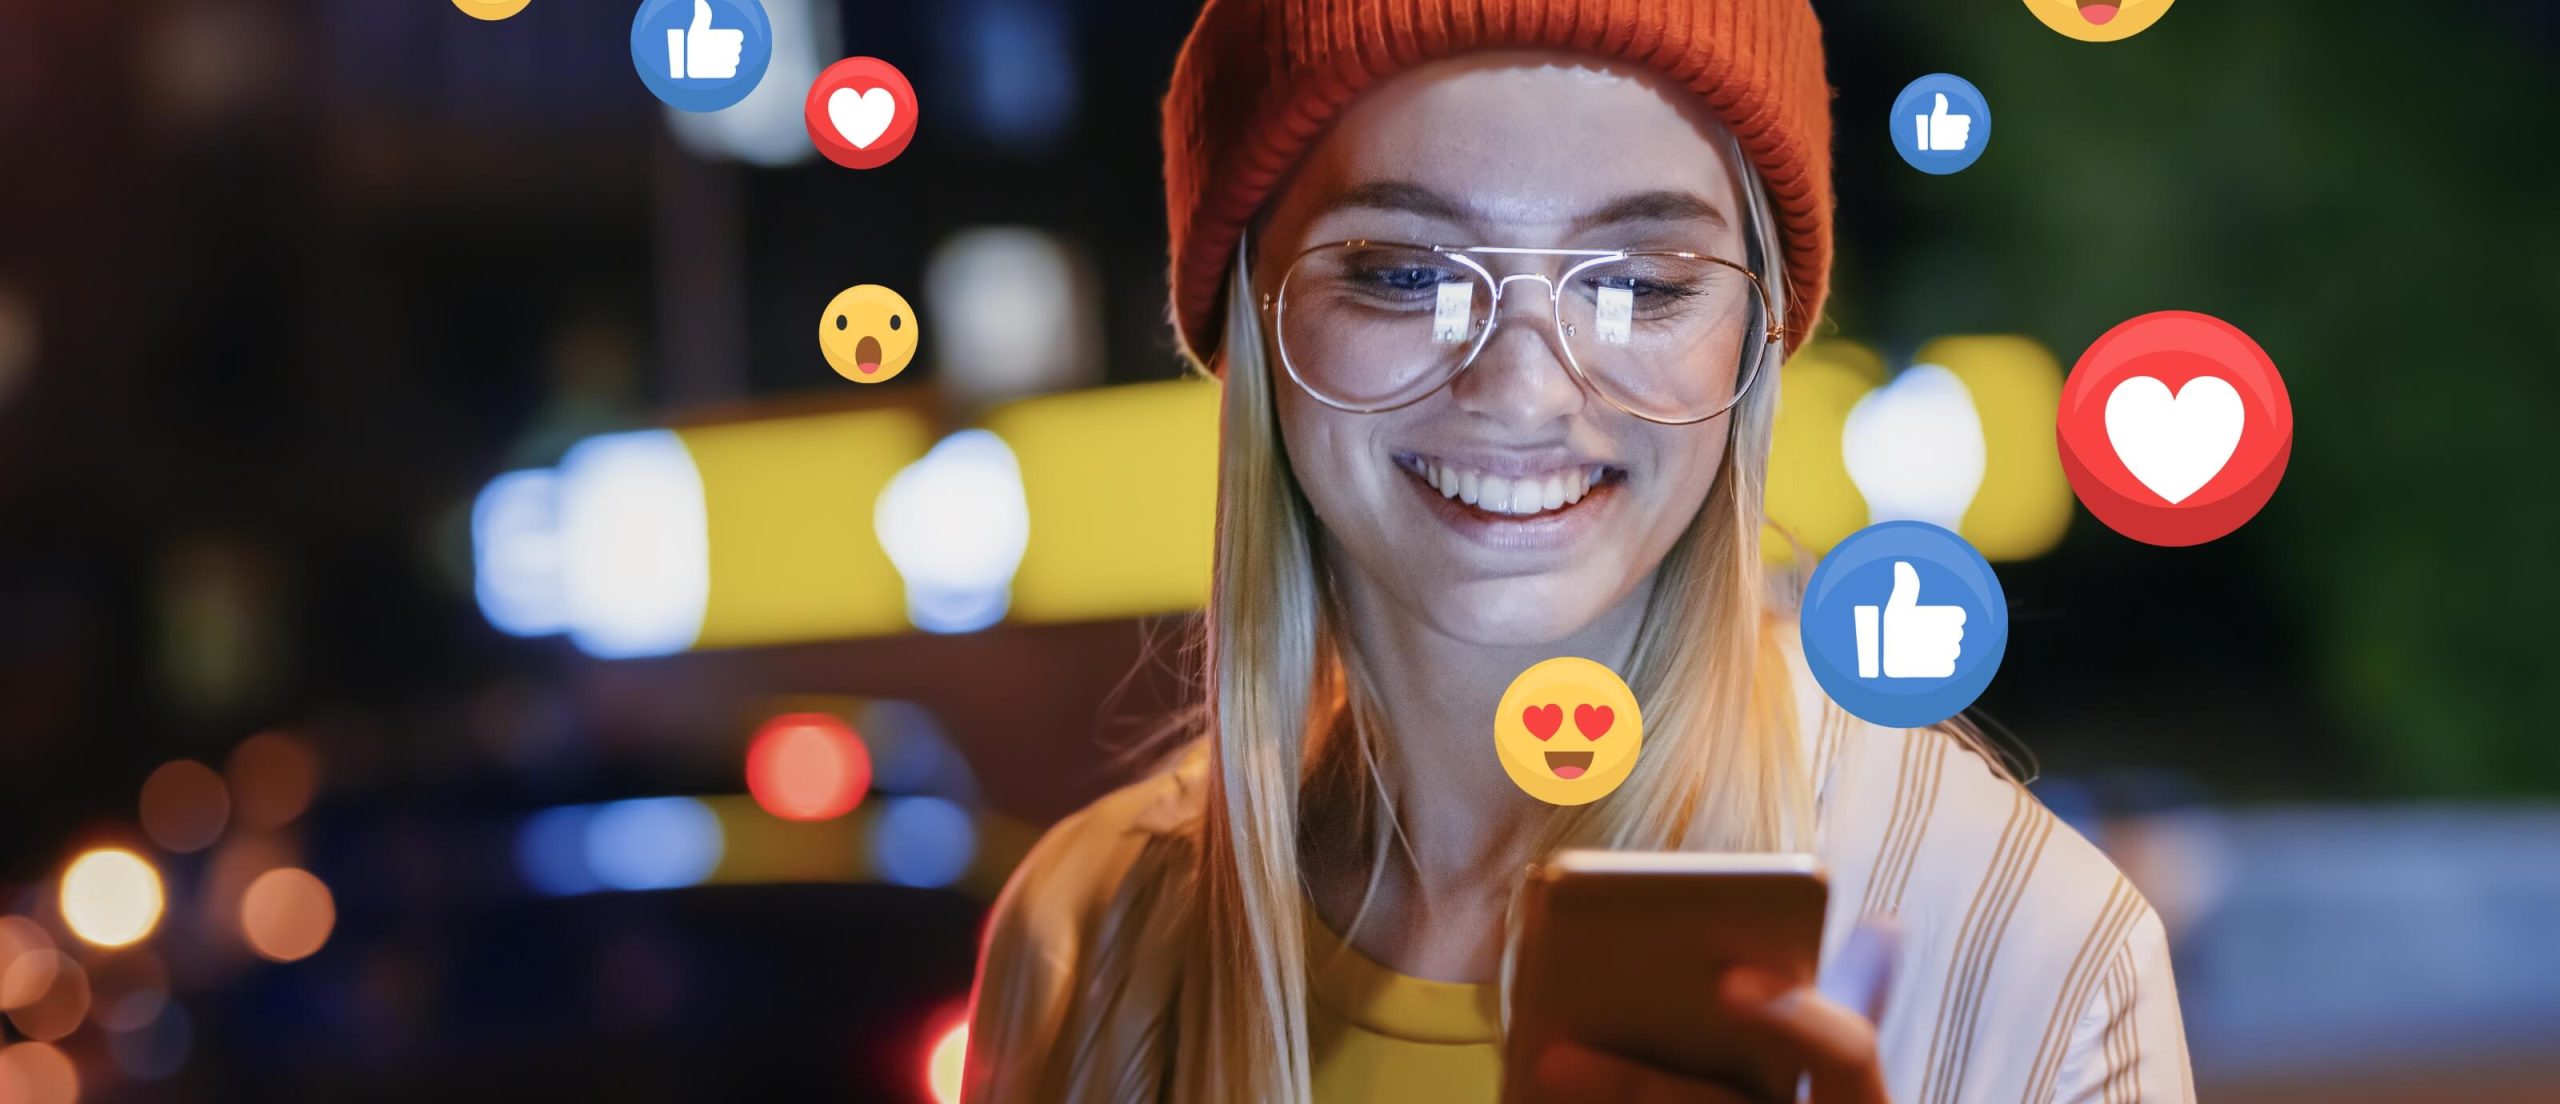 Mädchen mit Brille lächelt auf ihr Handy und Emojis fliegen um sie herum